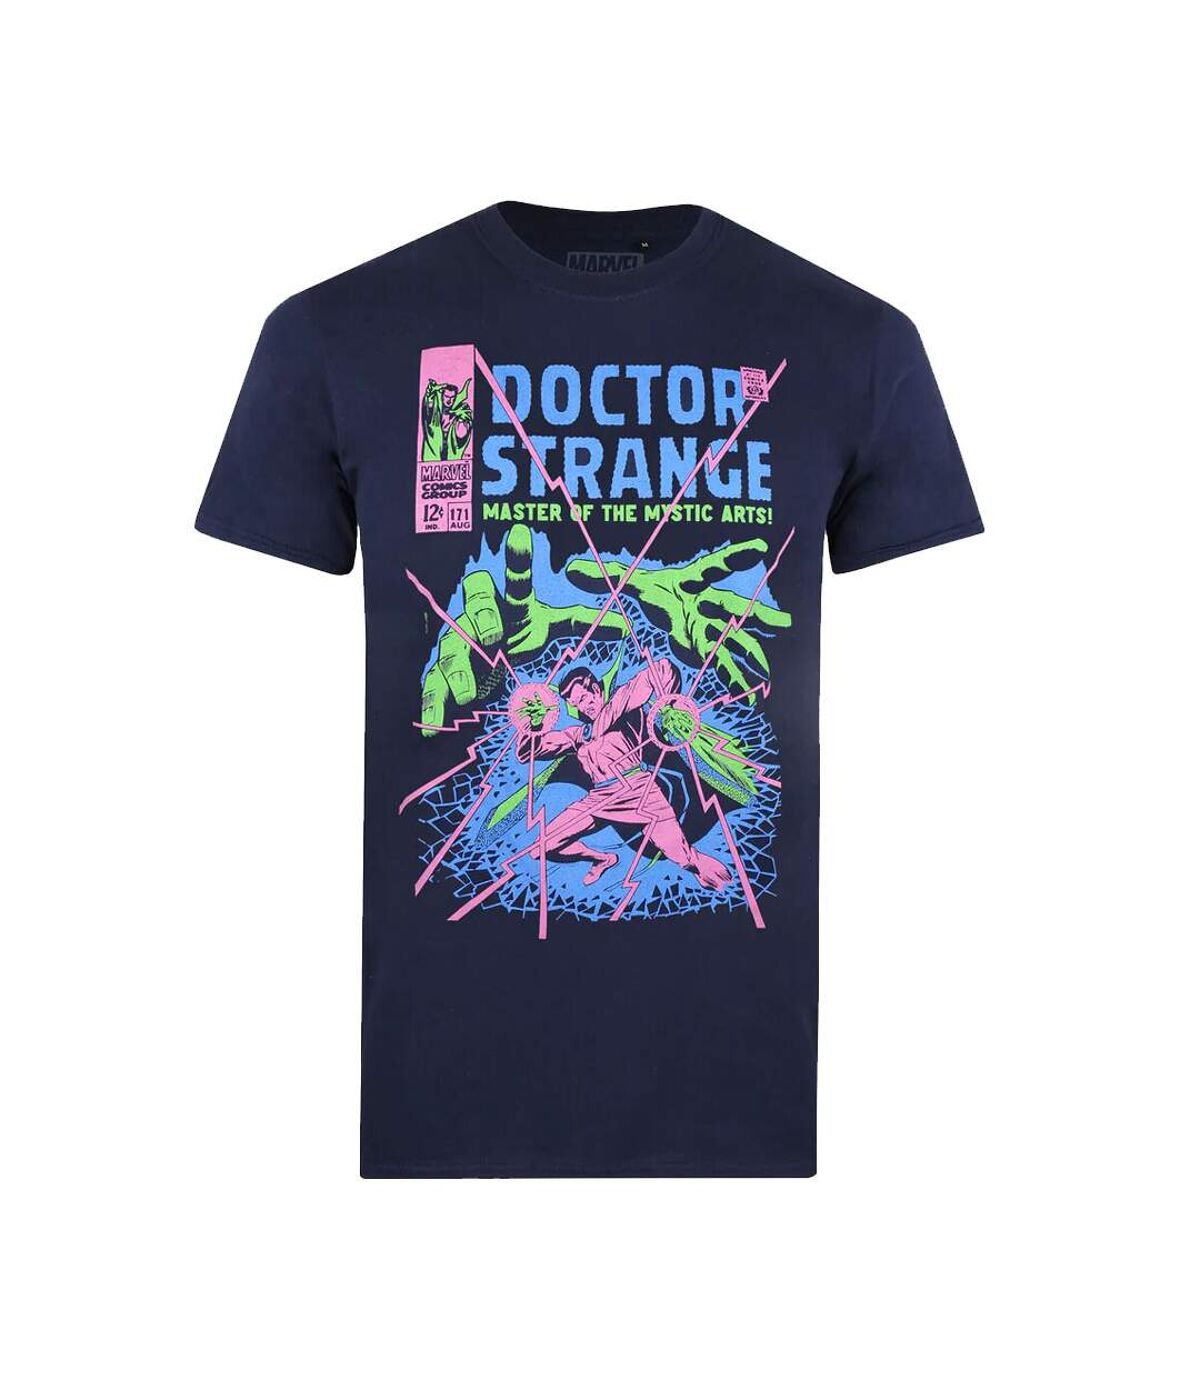 Doctor Strange - T-shirt MASTER - Homme (Bleu marine / Rose / Vert) - UTTV391